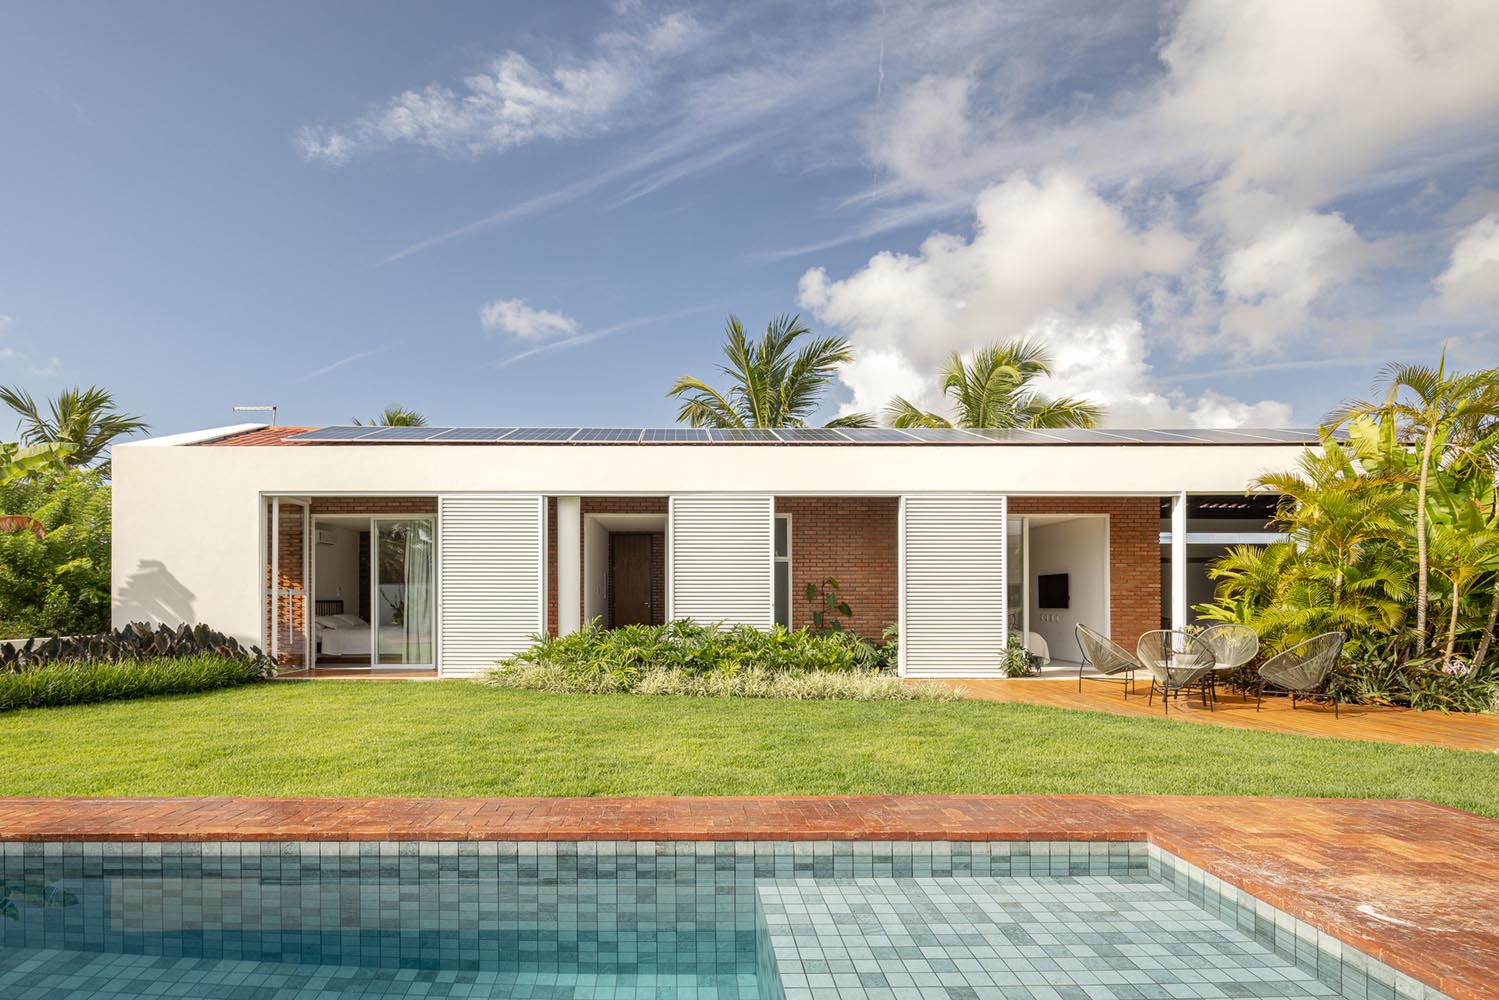 住宅設計,聯排別墅,別墅設計,紅磚別墅,Coletivo de Arquitetos,巴西,庭院別墅,300㎡